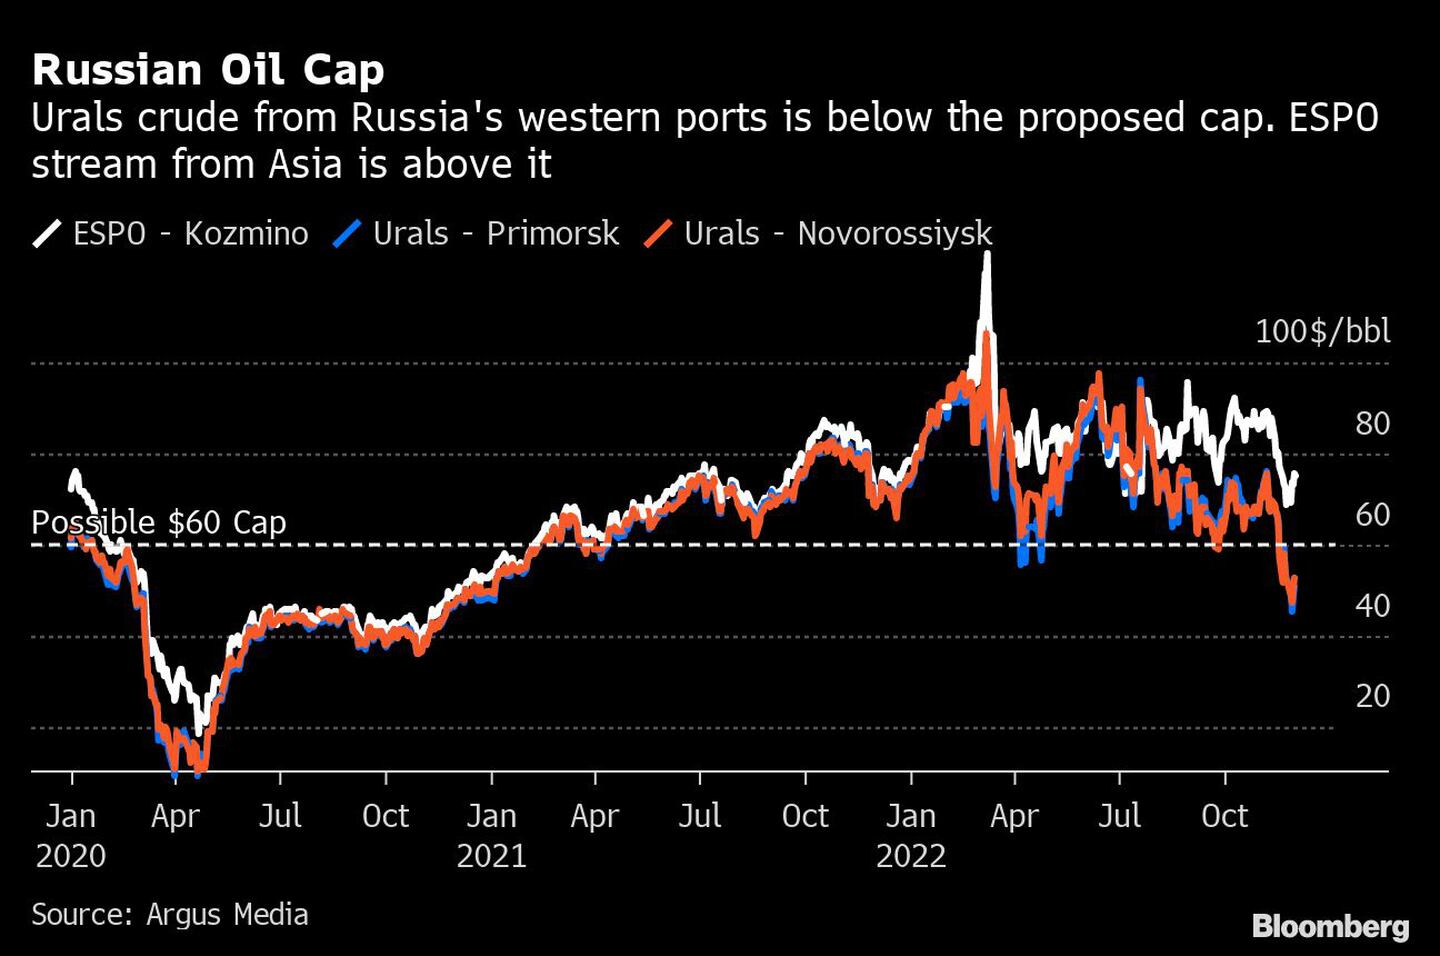 El crudo de los Urales procedente de los puertos occidentales de Rusia está por debajo del límite propuesto. El flujo ESPO de Asia está por encimadfd